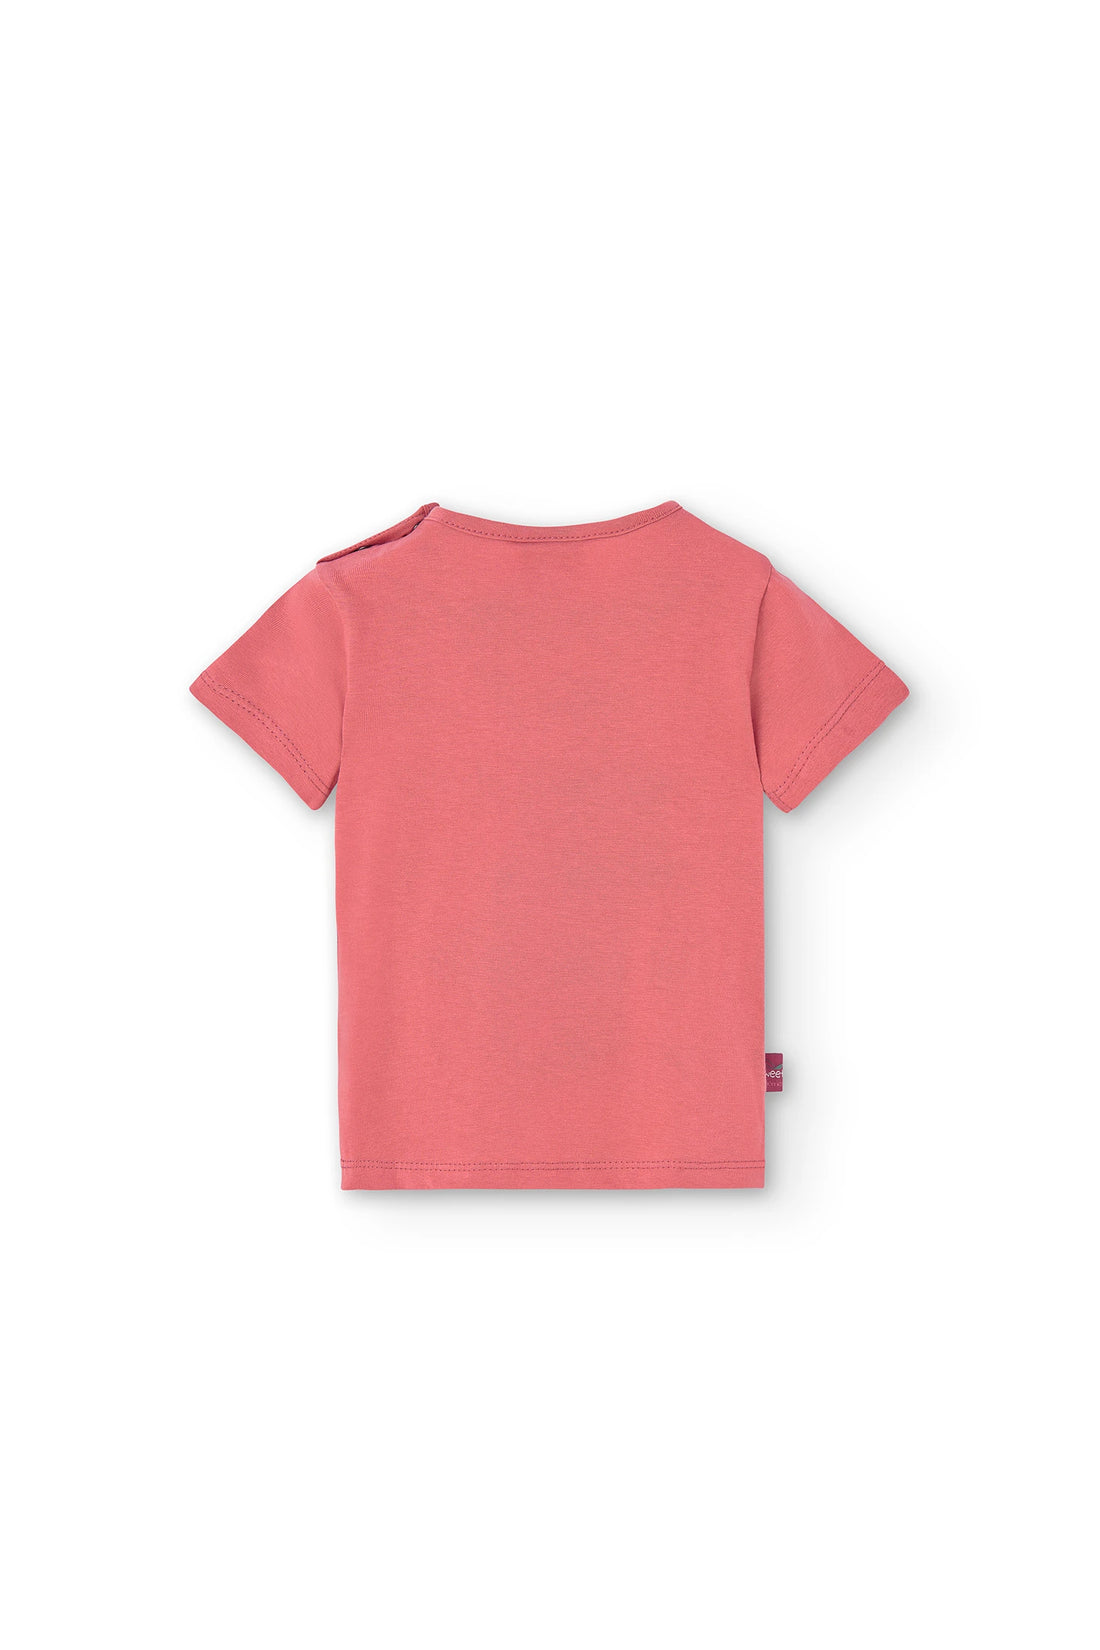 Camiseta punto "cereza" de bebé niña